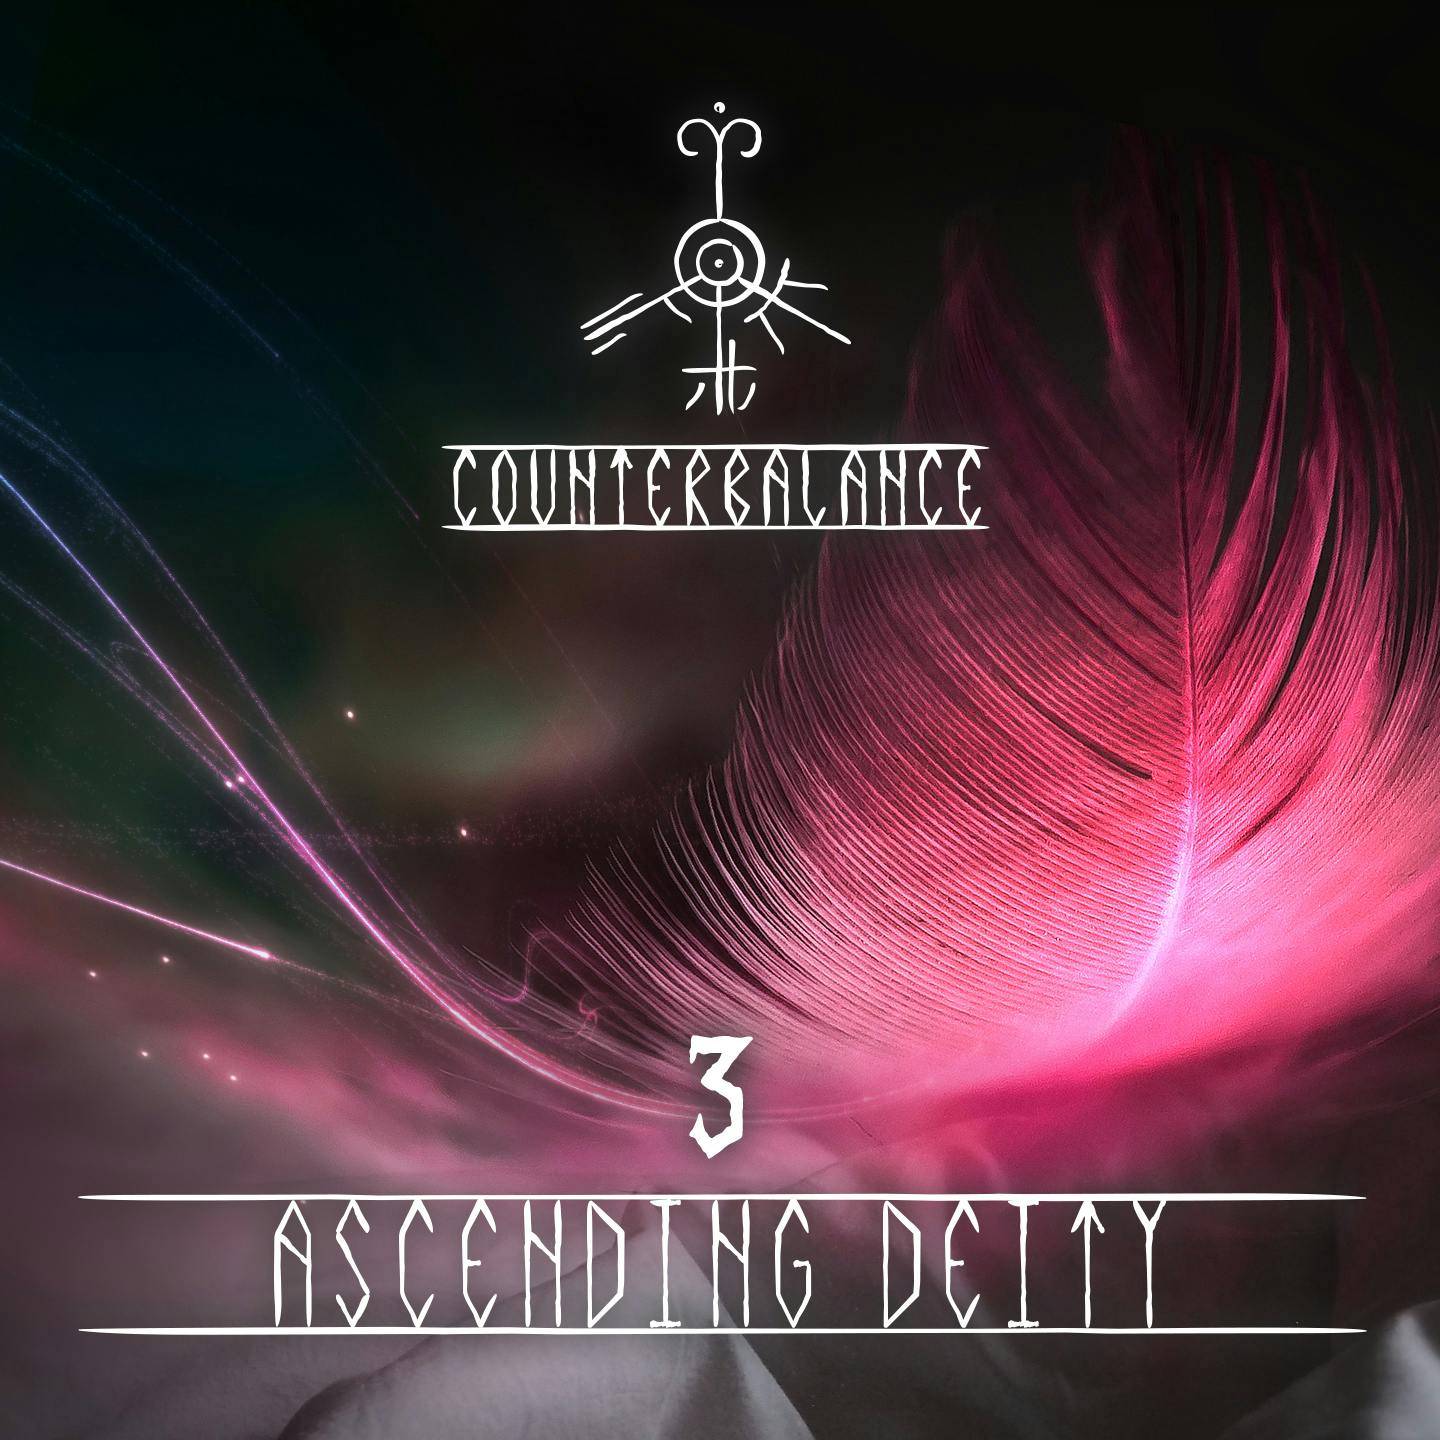 03 | Ascending Deity